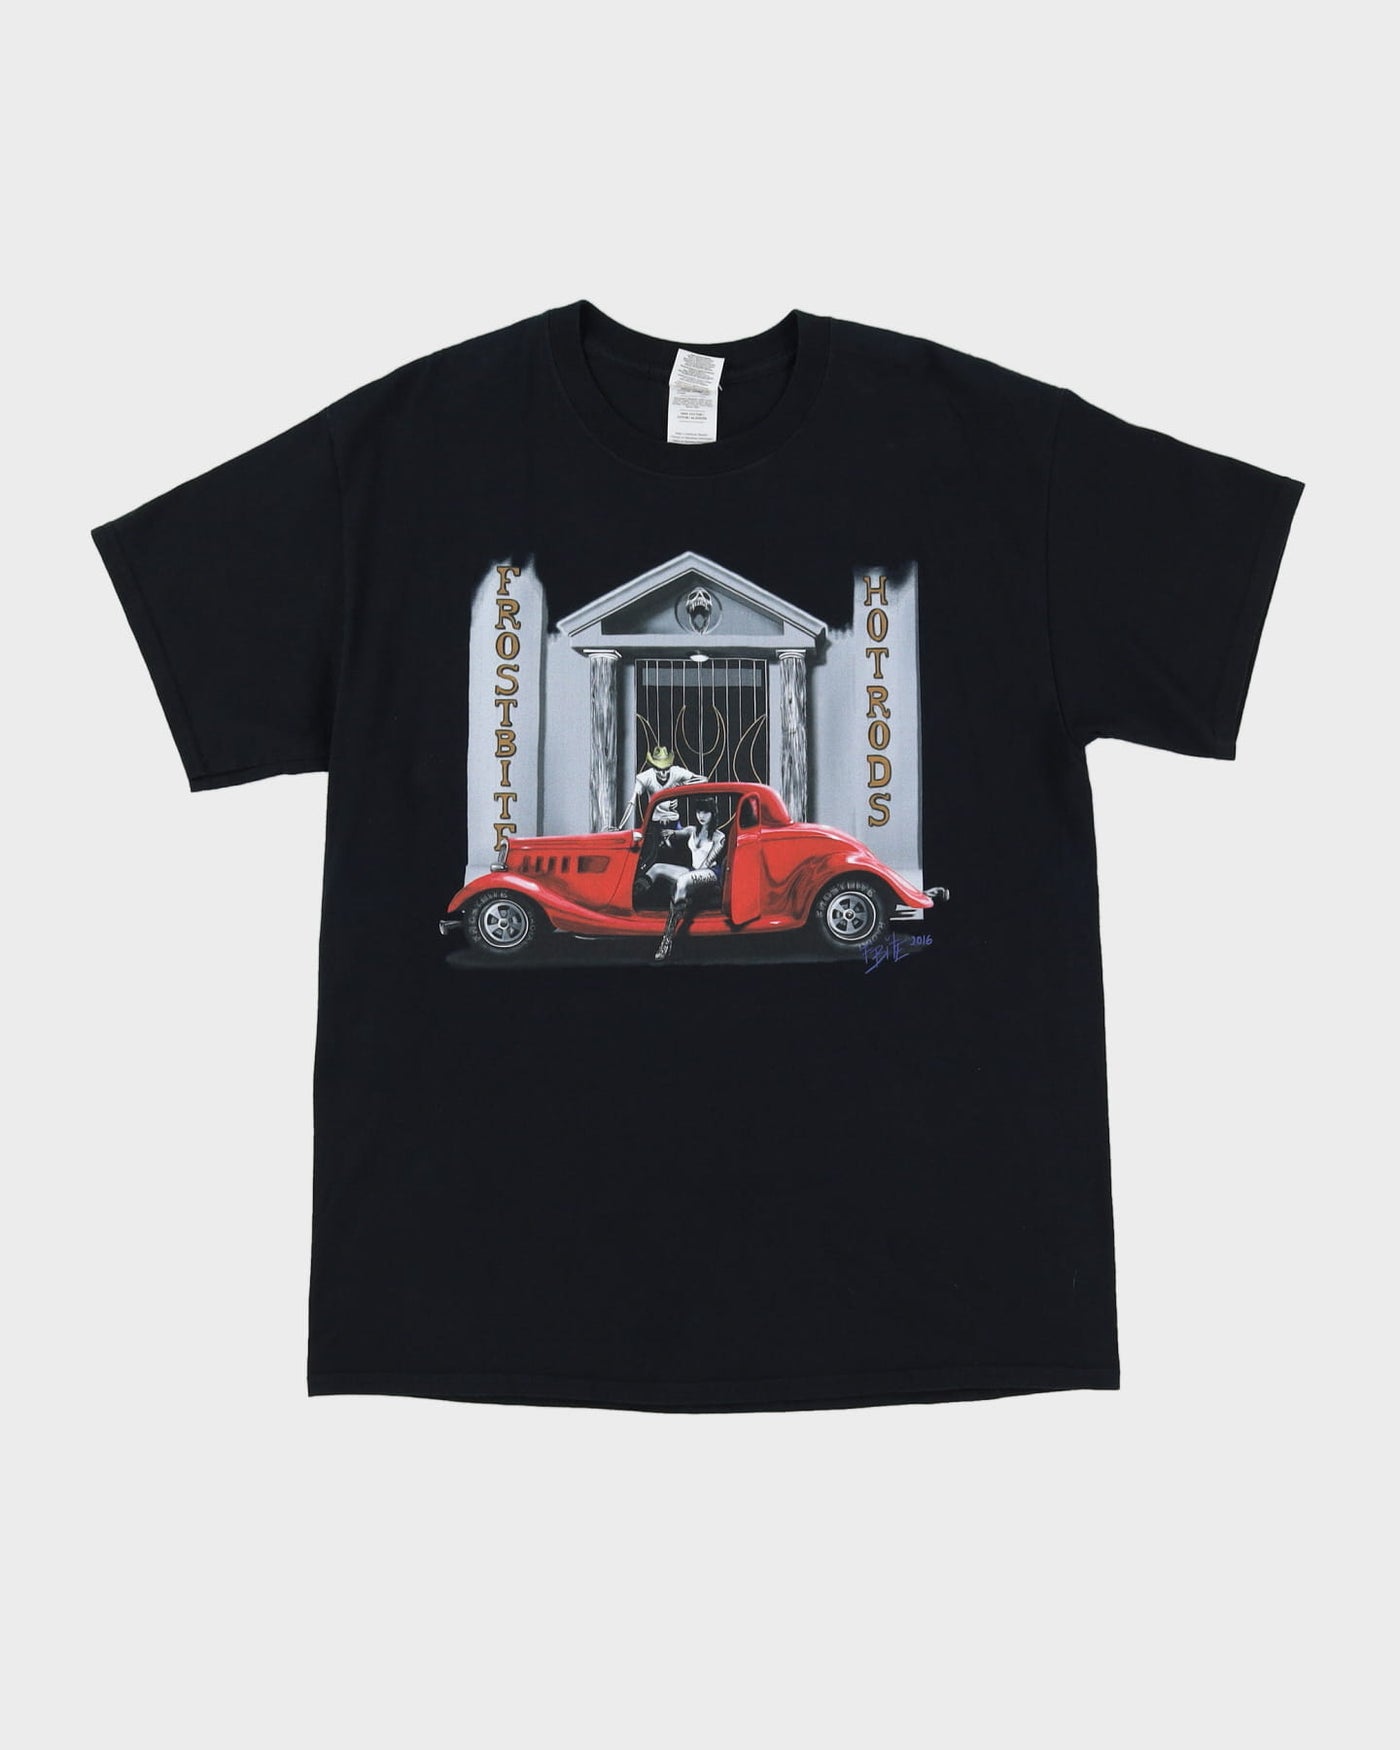 00s Frostbite Hotrods Black Graphic T-Shirt - L